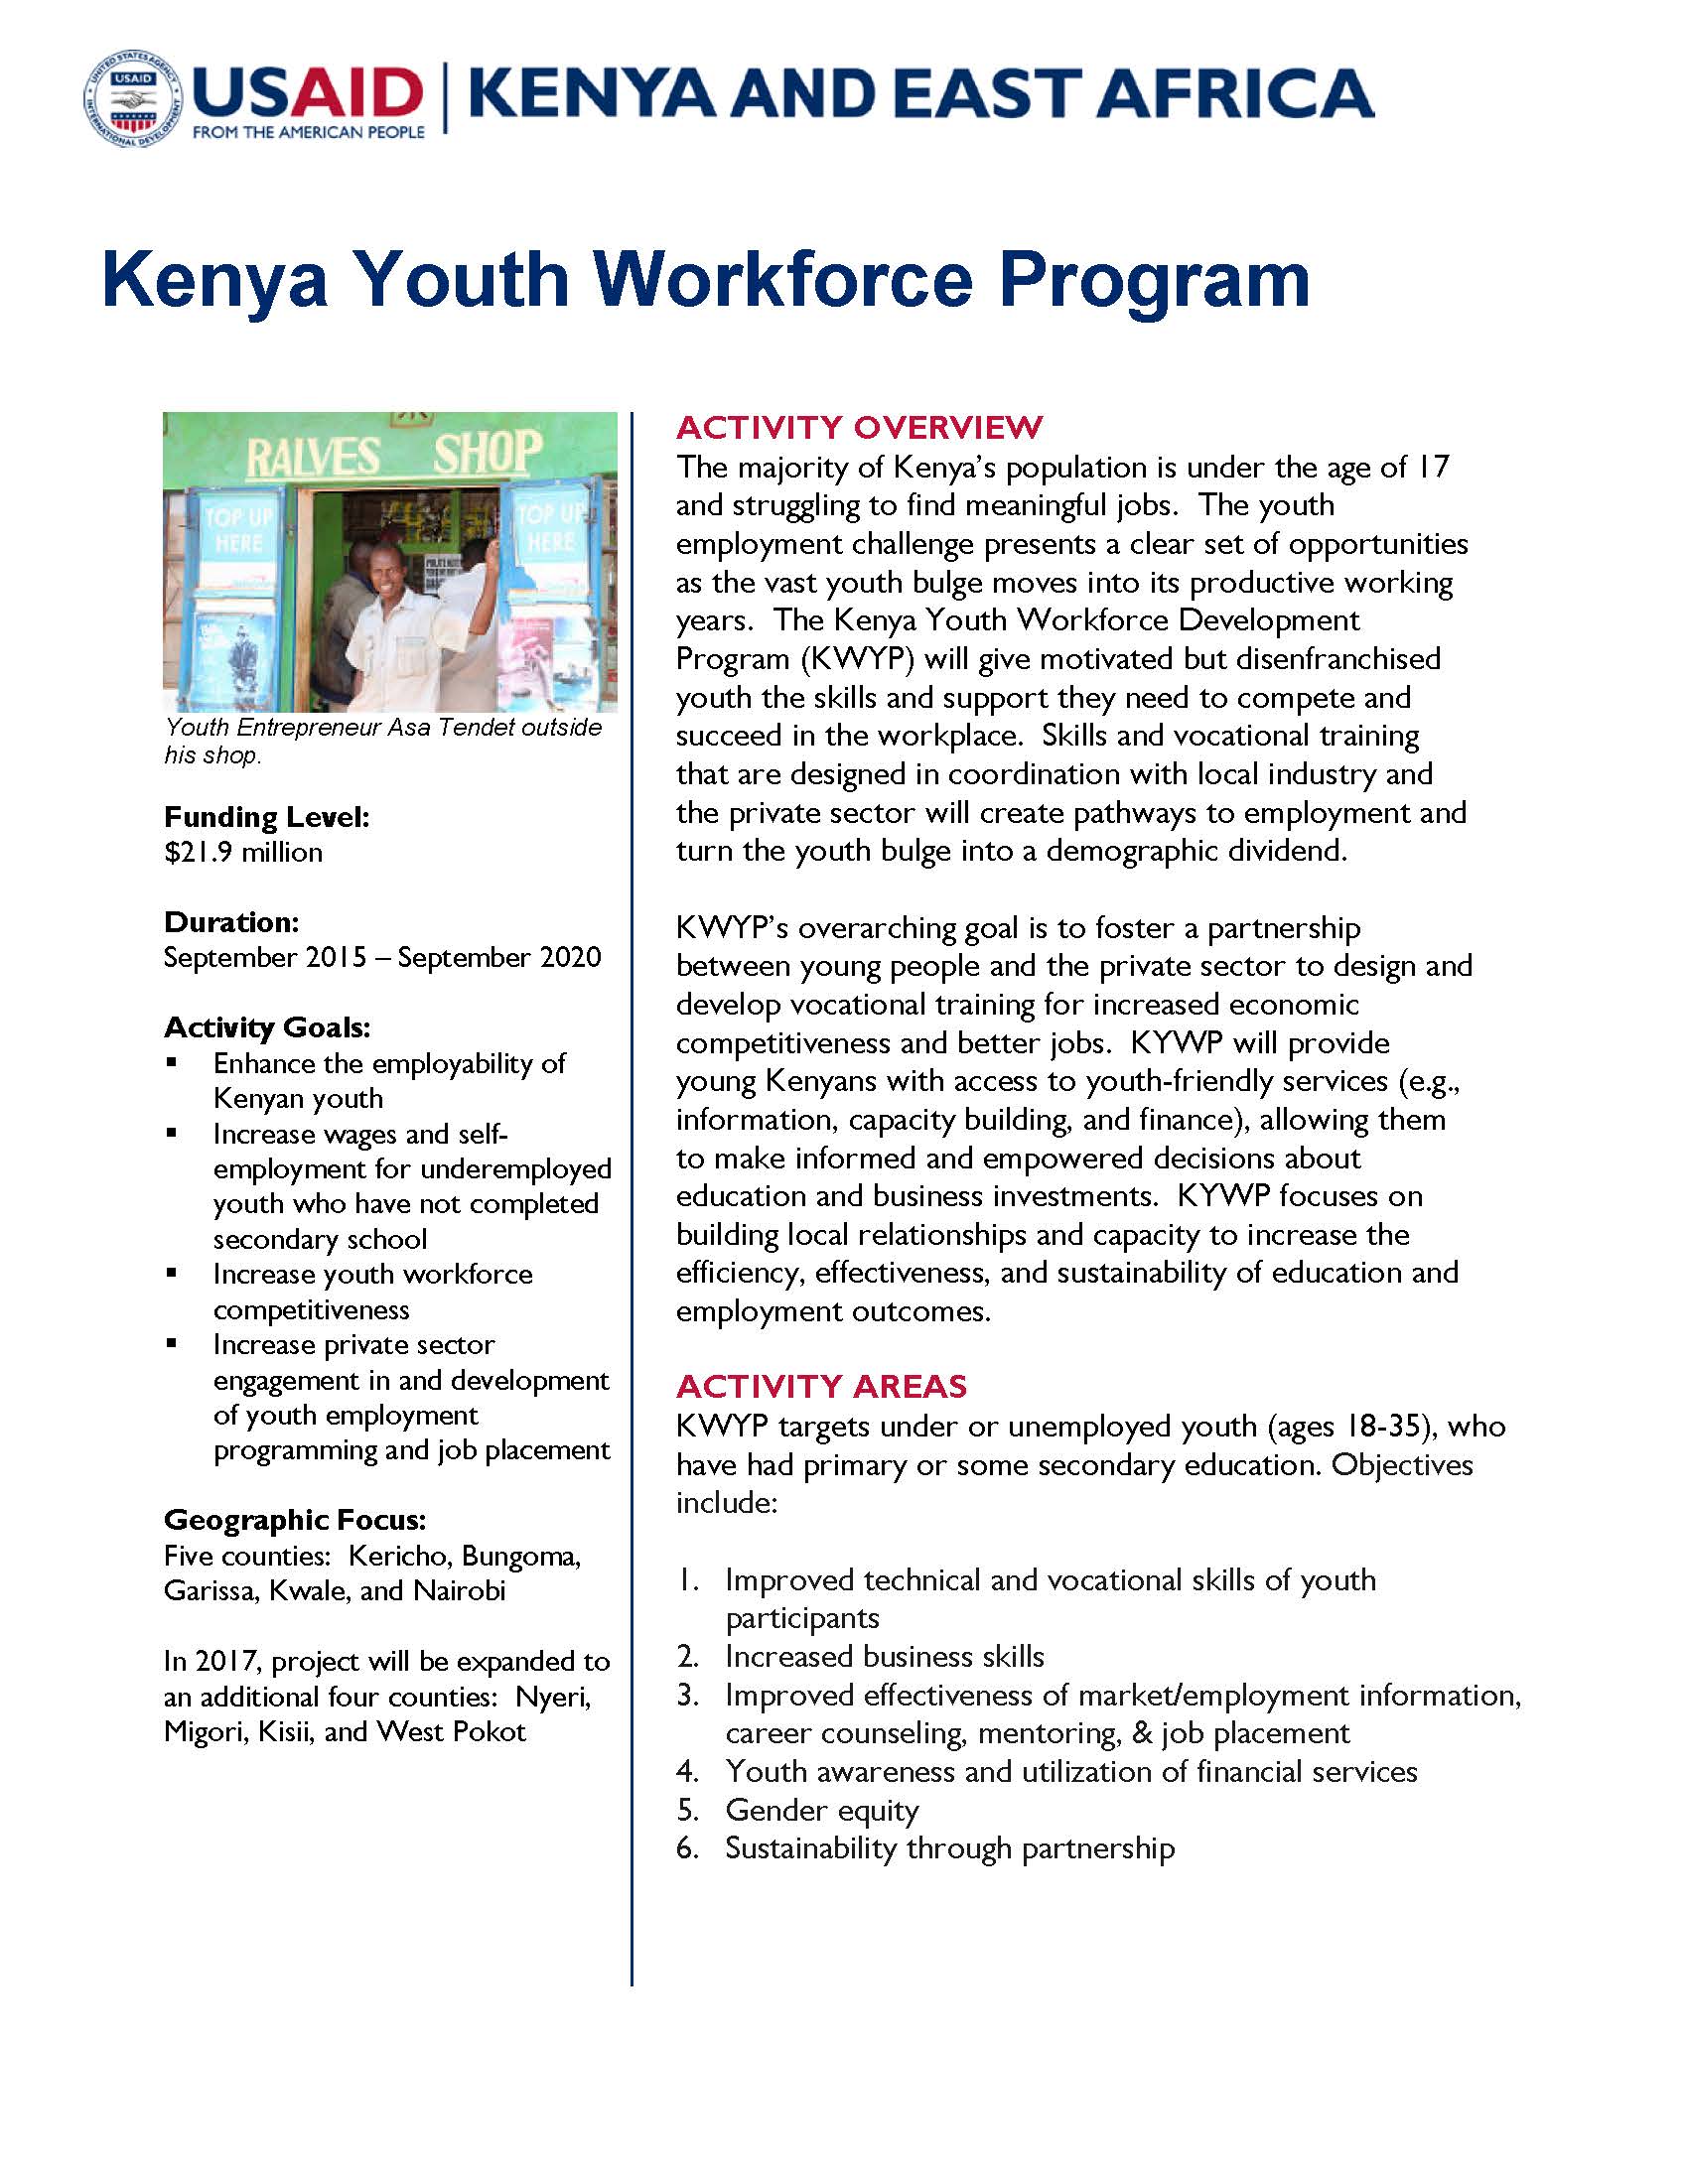 Kenya Youth Employment and Skills Program (K-YES)